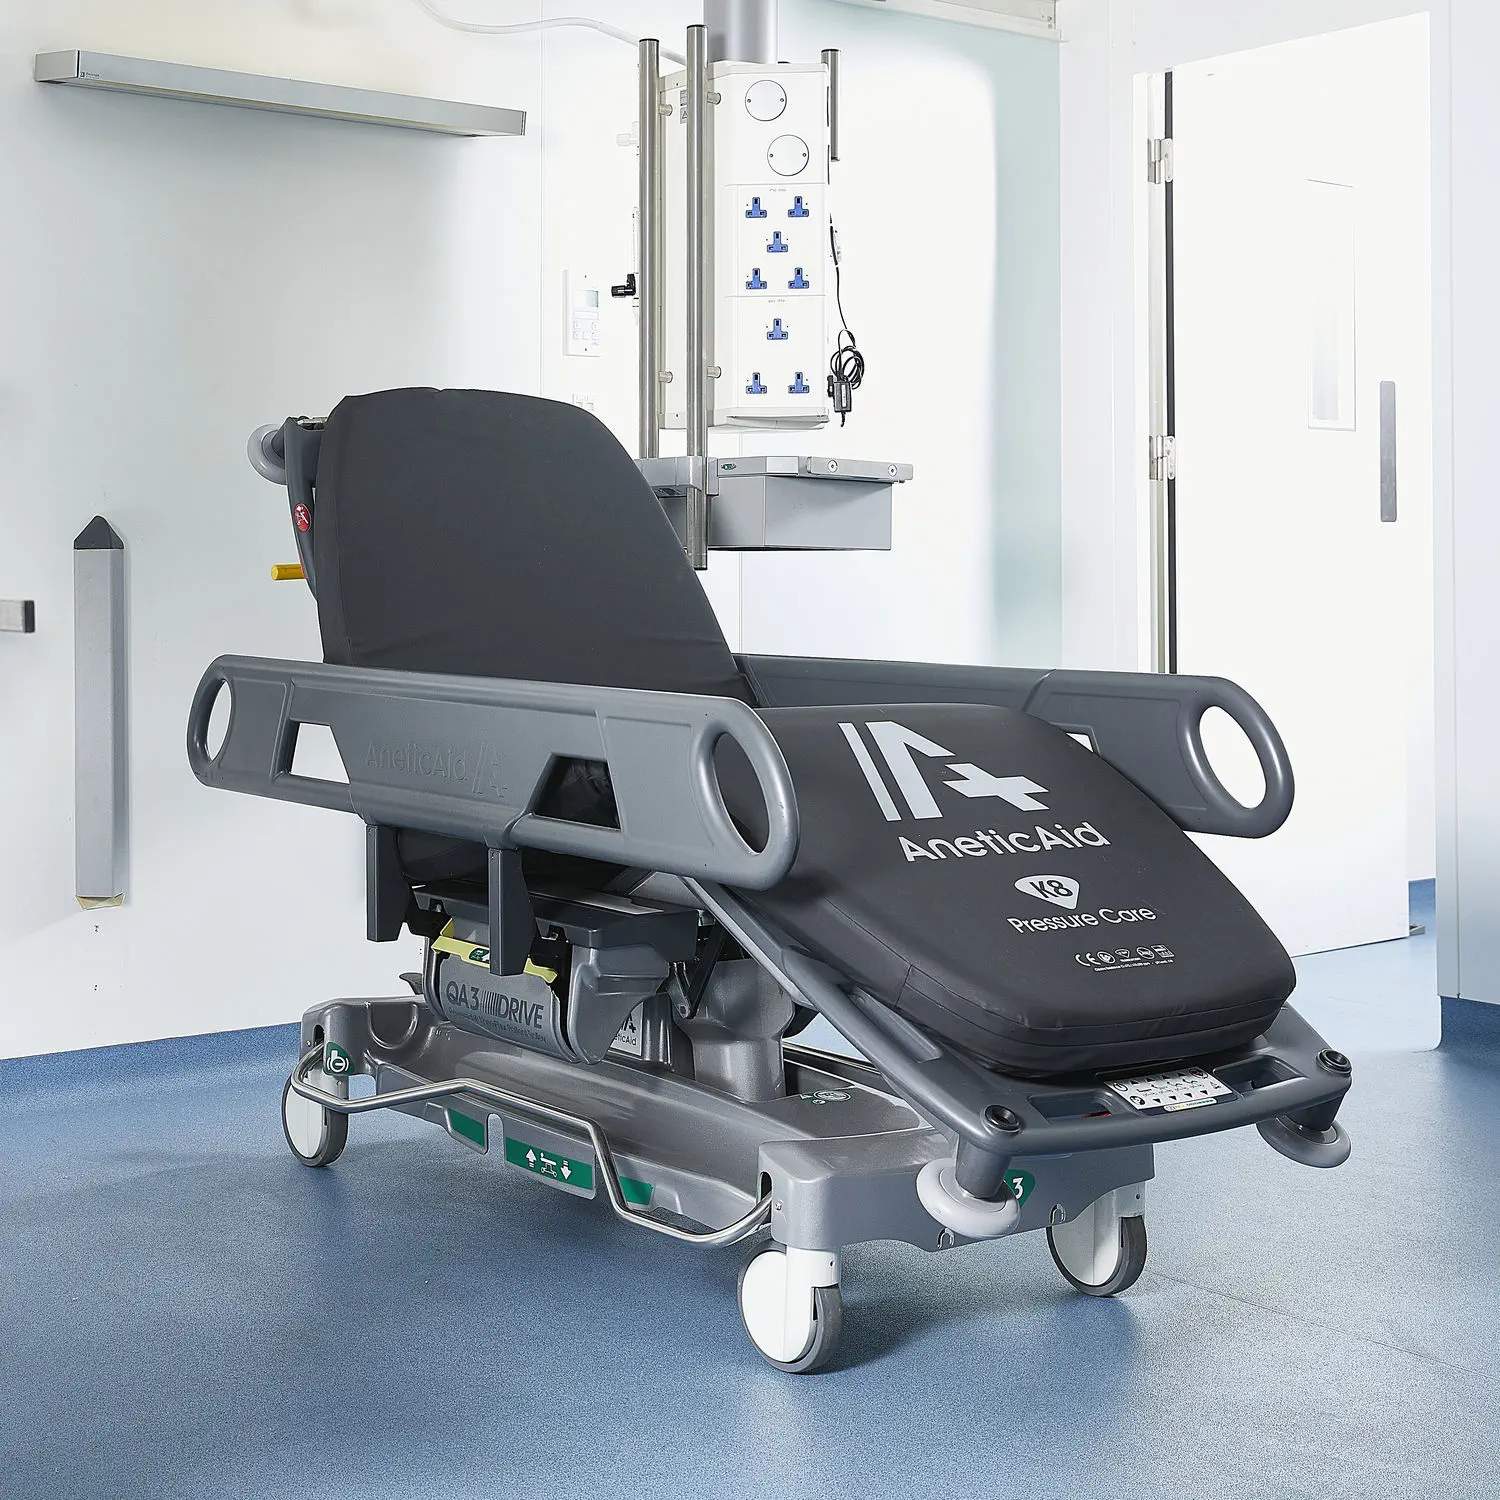 เตียงเคลื่อนย้ายผู้ป่วยปรับระดับไฮดรอลิก พร้อมเอกซเรย์ผ่านได้  Patient transfer stretcher trolley QA3™ DRIVE Powered  Anetic Aid